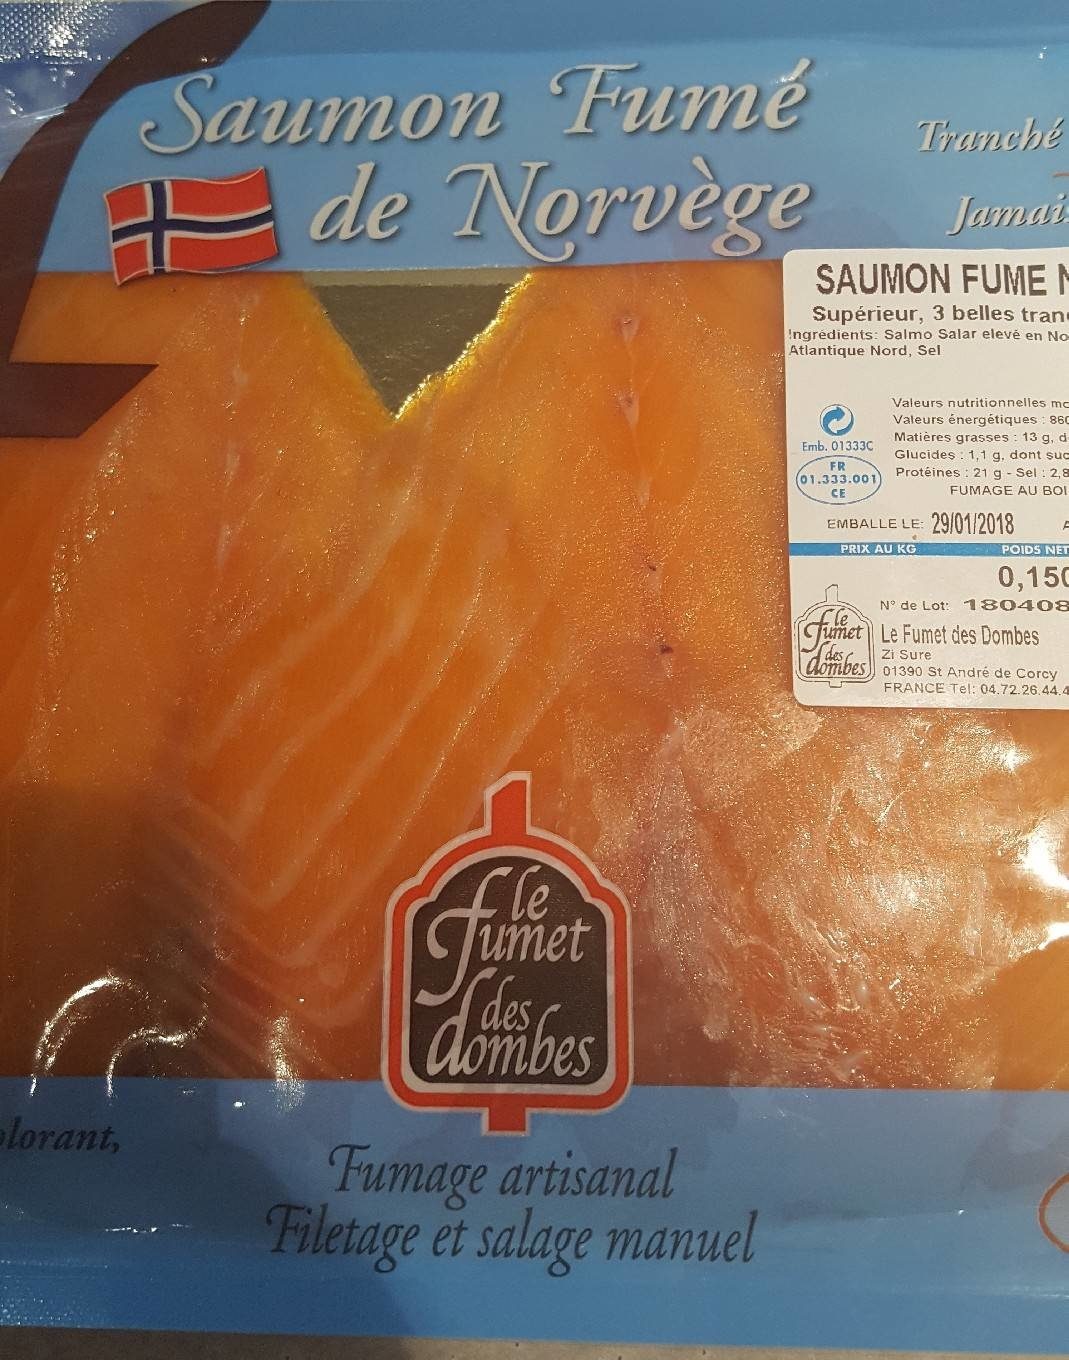 Saumon fumé de norvege - Product - fr